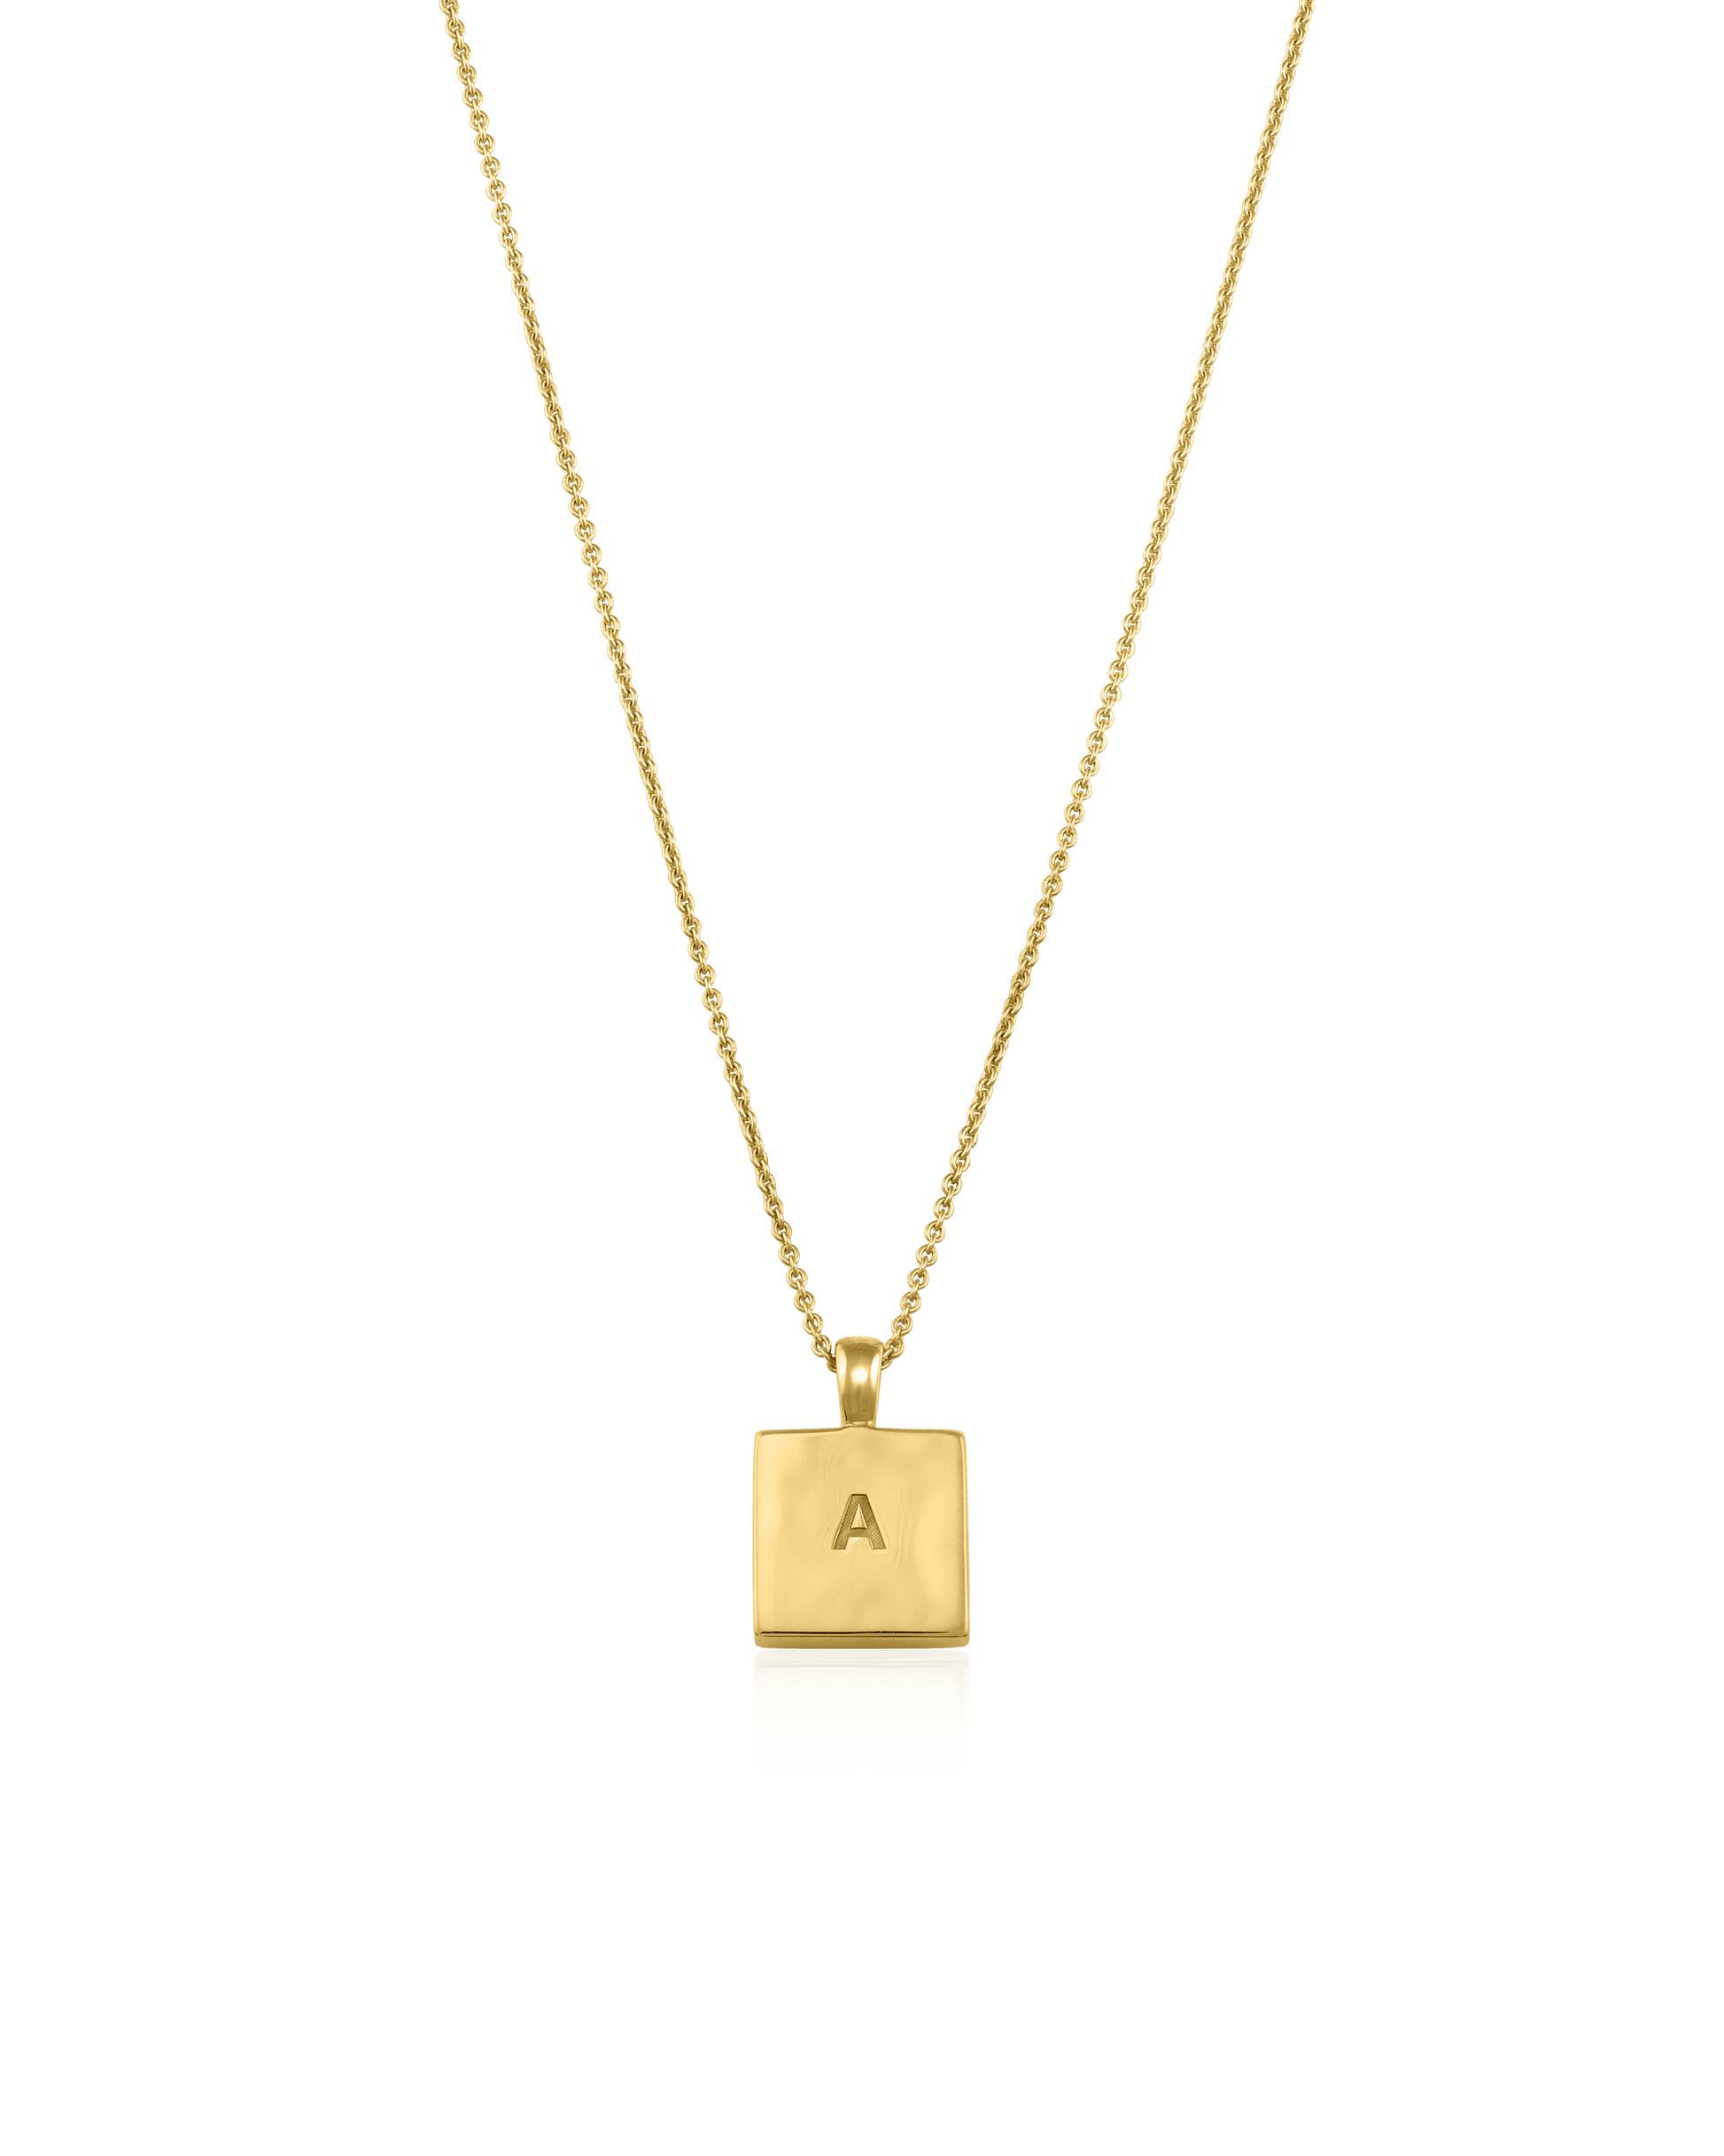 El Dorado Necklace - 18K Gold Vermeil Necklaces magal-dev 